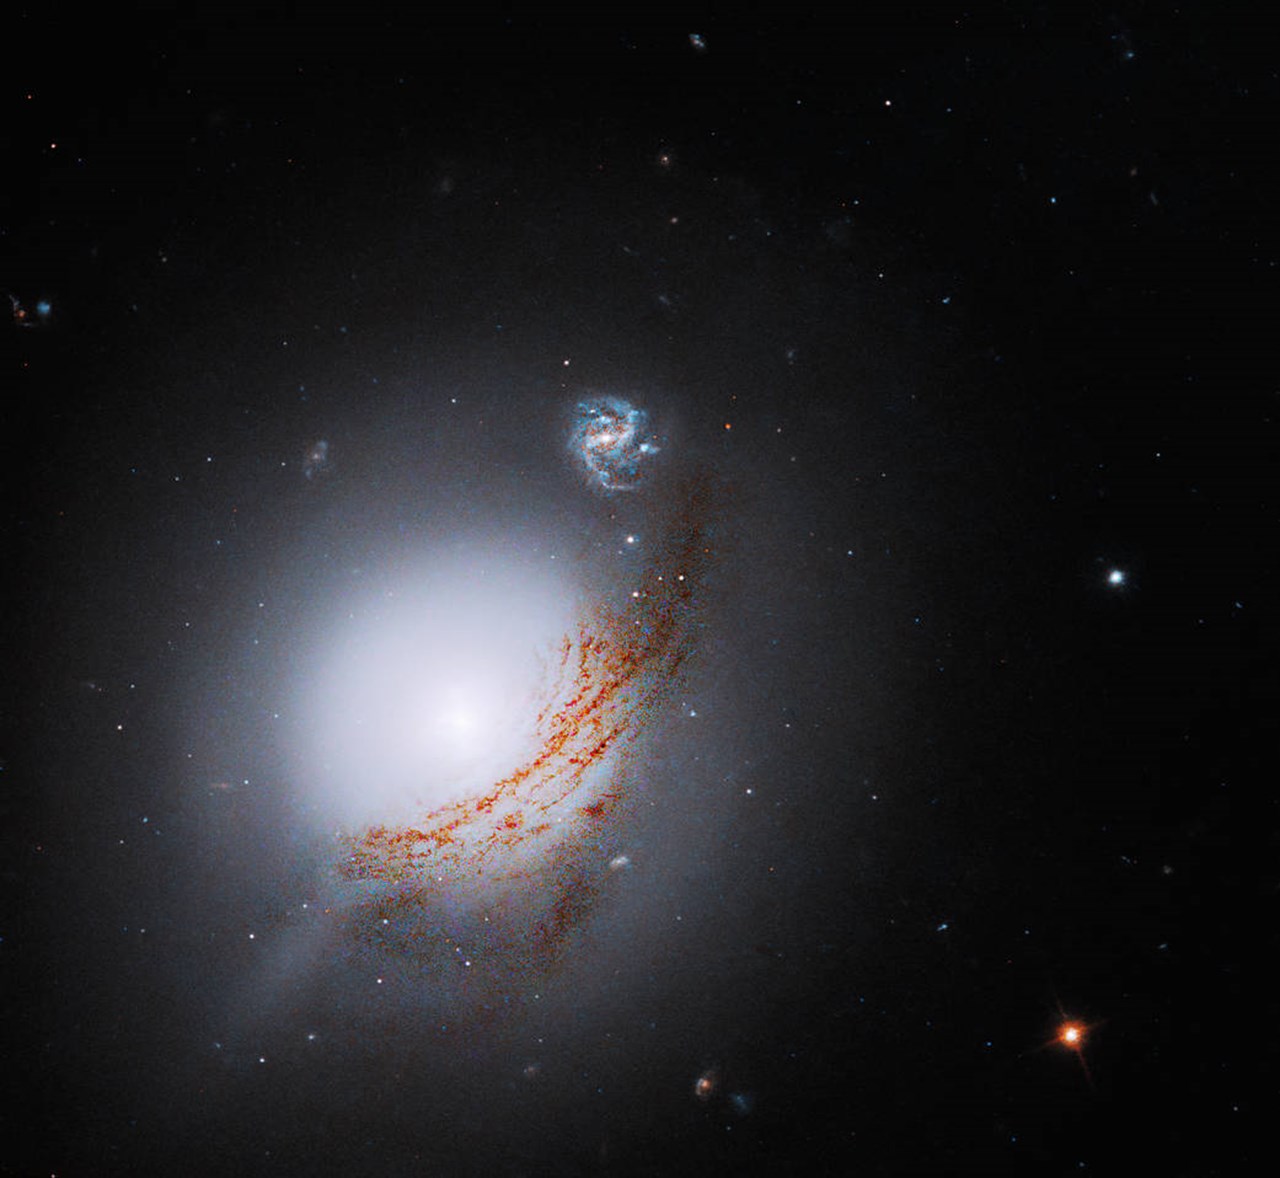 Teleskop NASA menangkap galaksi indah yang berisi lubang hitam supermasif